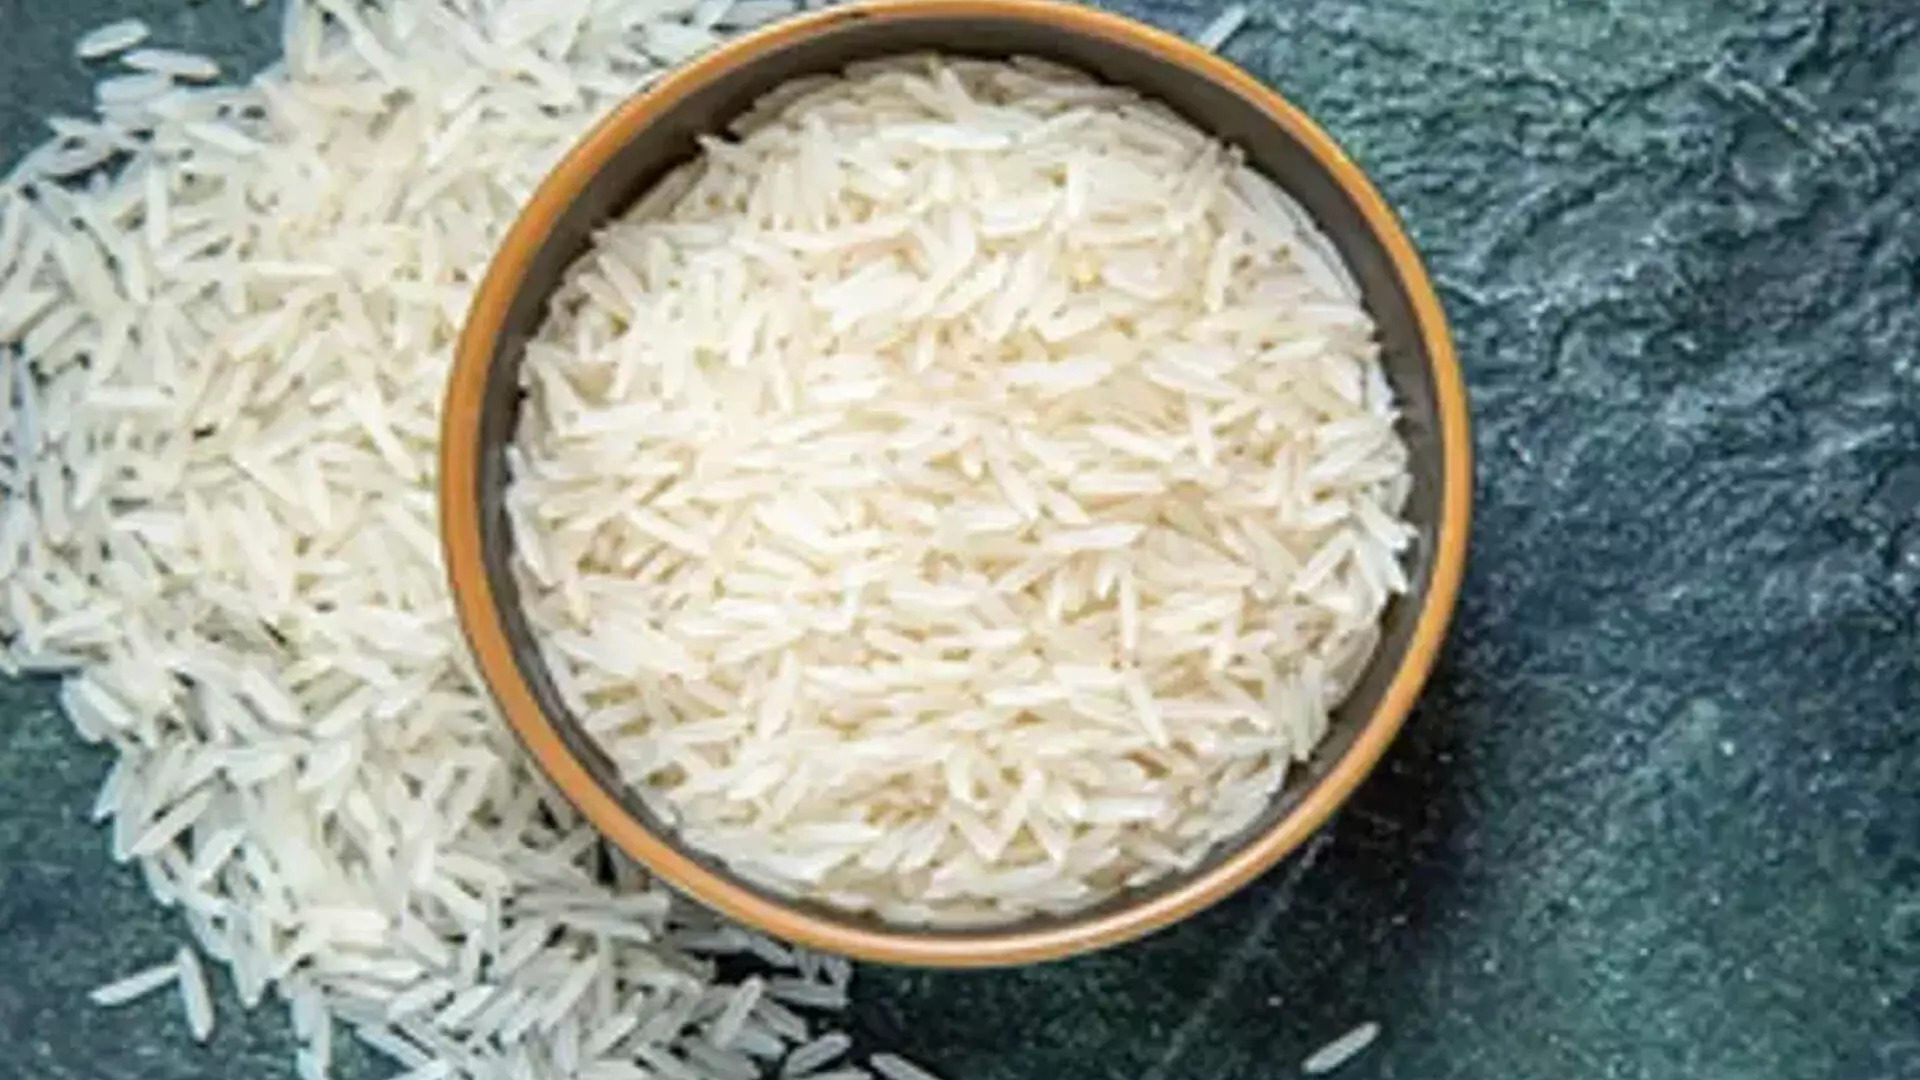 रूस ने पाकिस्तानी चावल में दूषित पदार्थ पाए जाने के बाद फिर से प्रतिबंध लगाने की चेतावनी दी